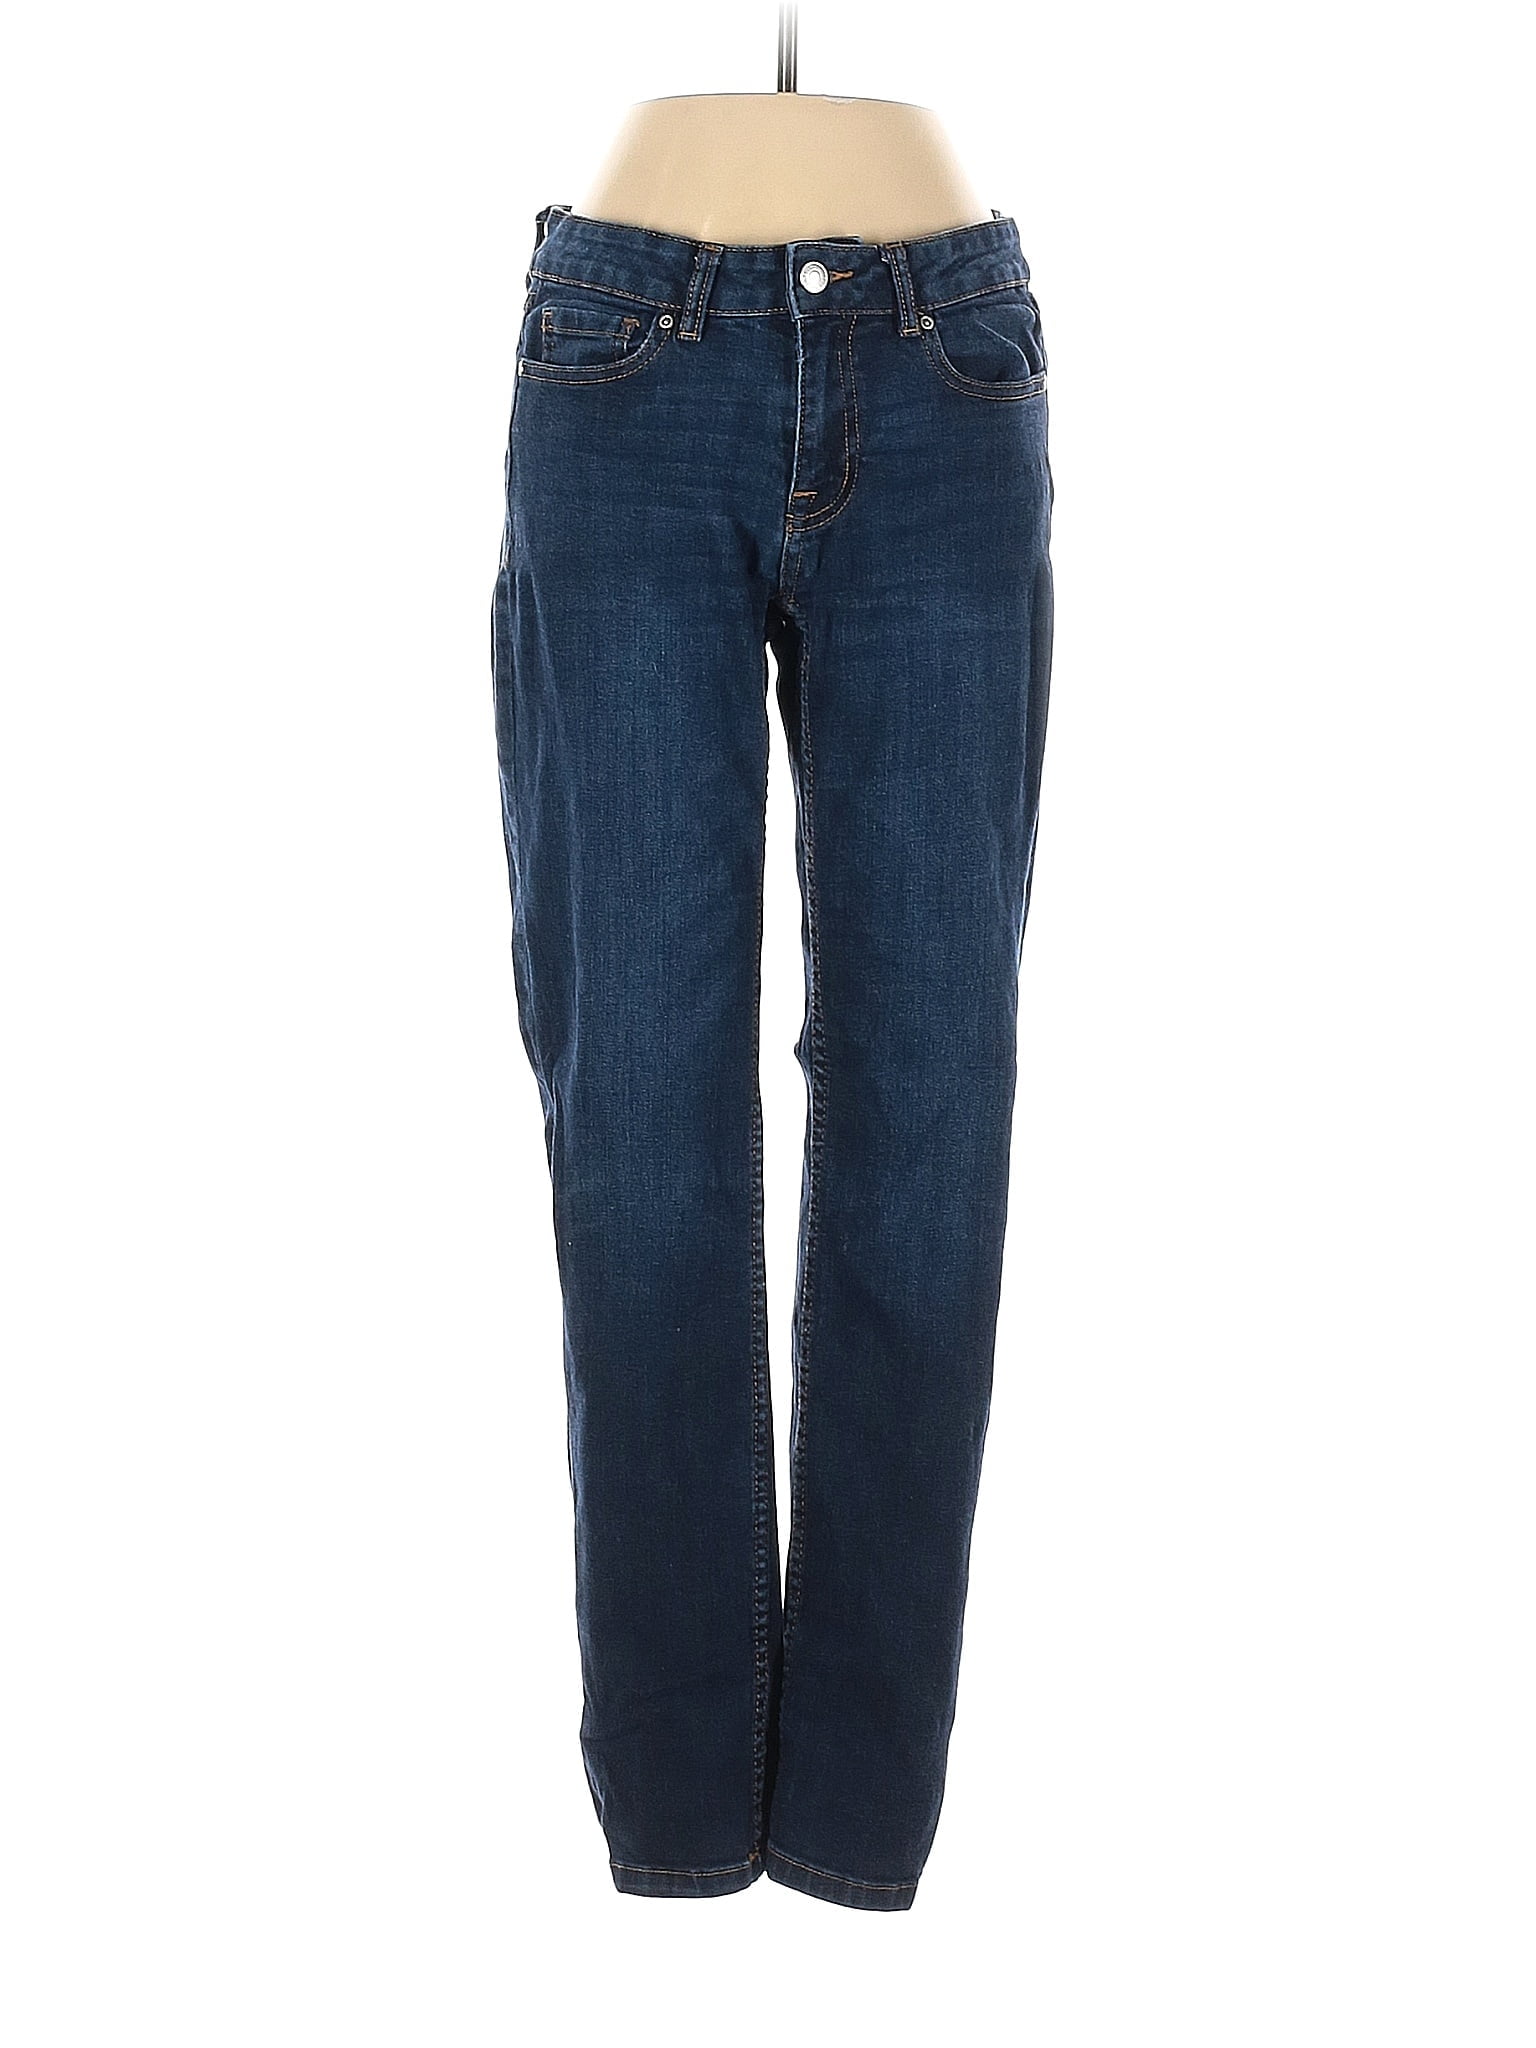 Pre-Owned Roebuck & Co. Women's Size 4 Jeans - Walmart.com